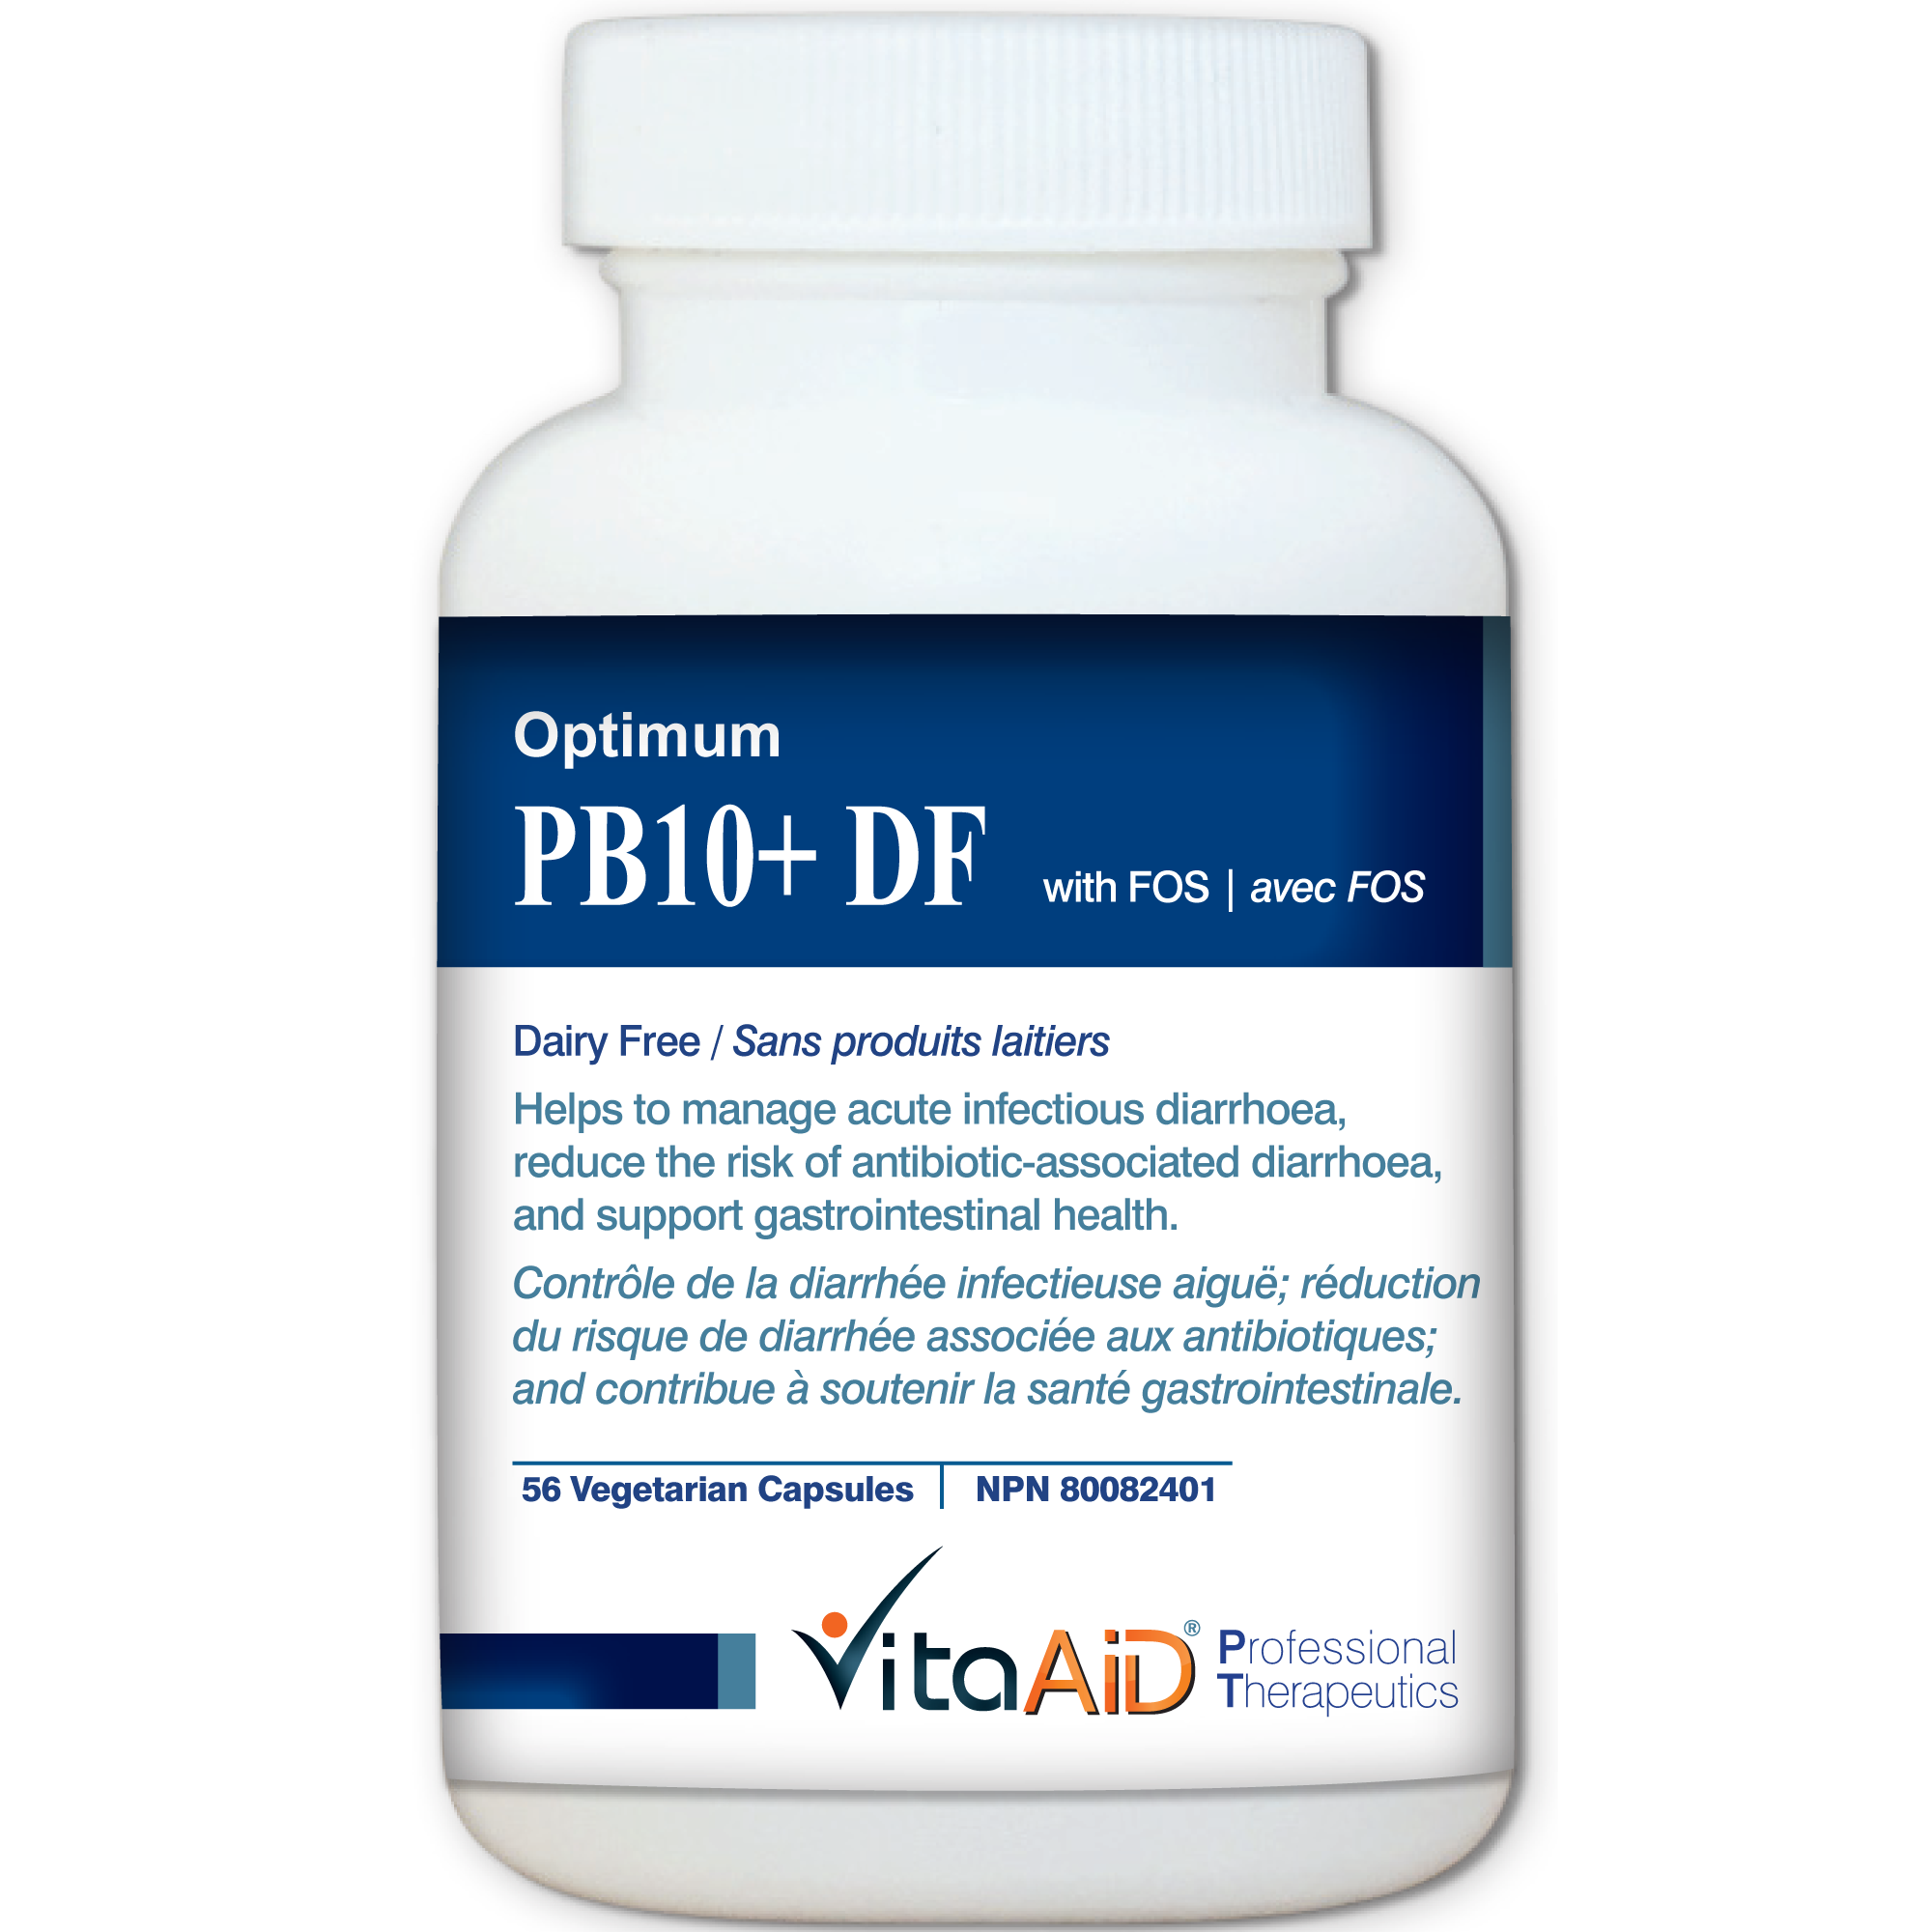 Optimum-PB10 DF (with FOS) Multi-Strain/Dairy Free Probiotic Formula 56 veg caps